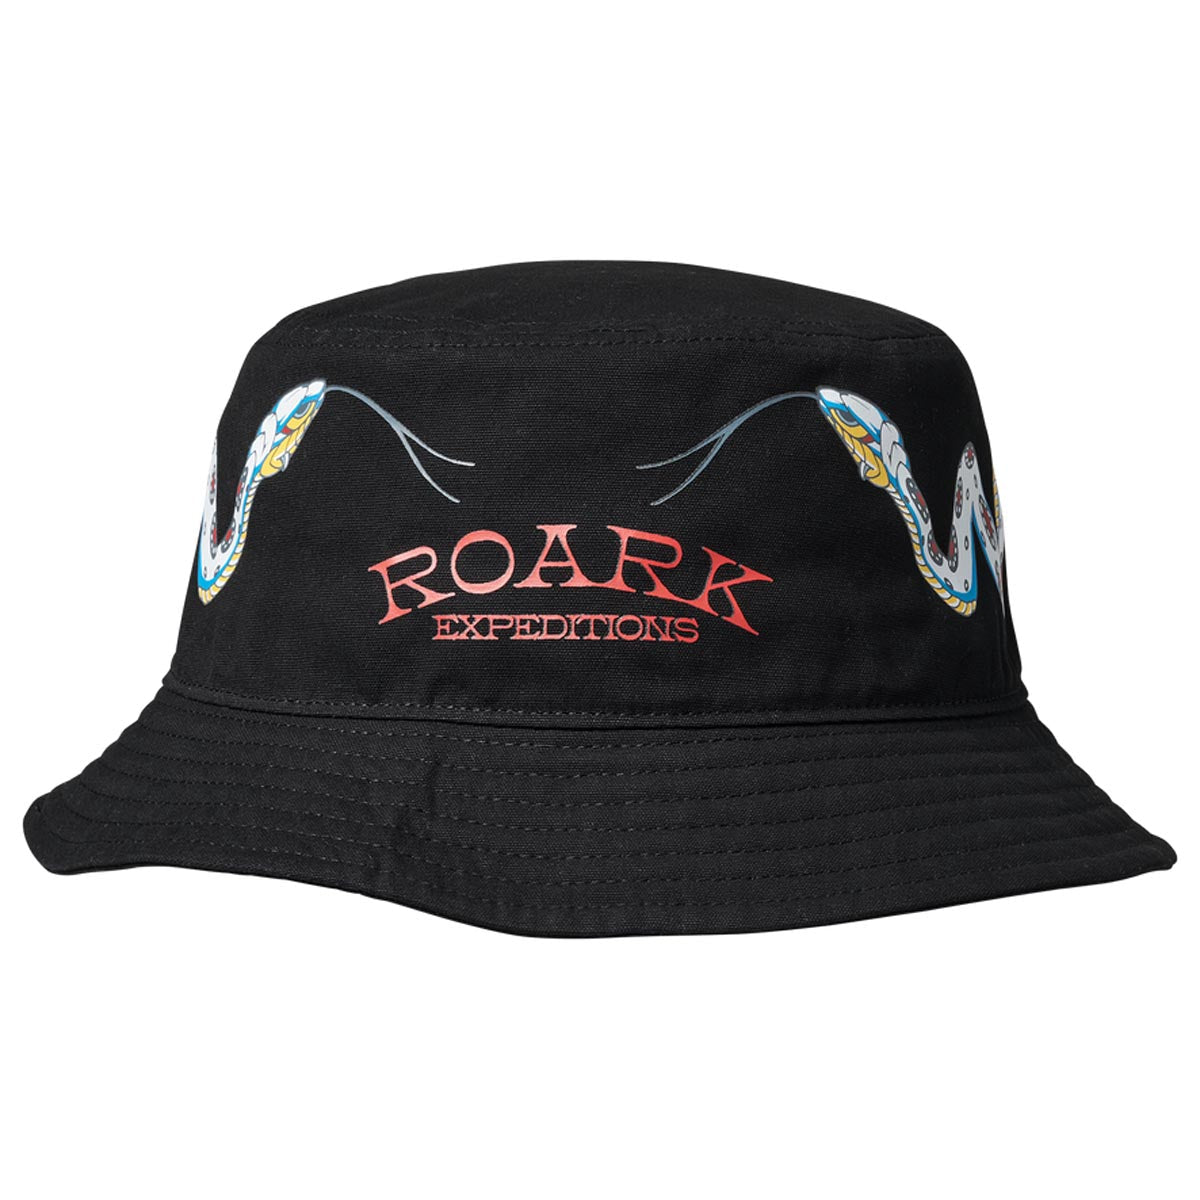 Roark Station Guideworks Trucker Hat - Dark Khaki